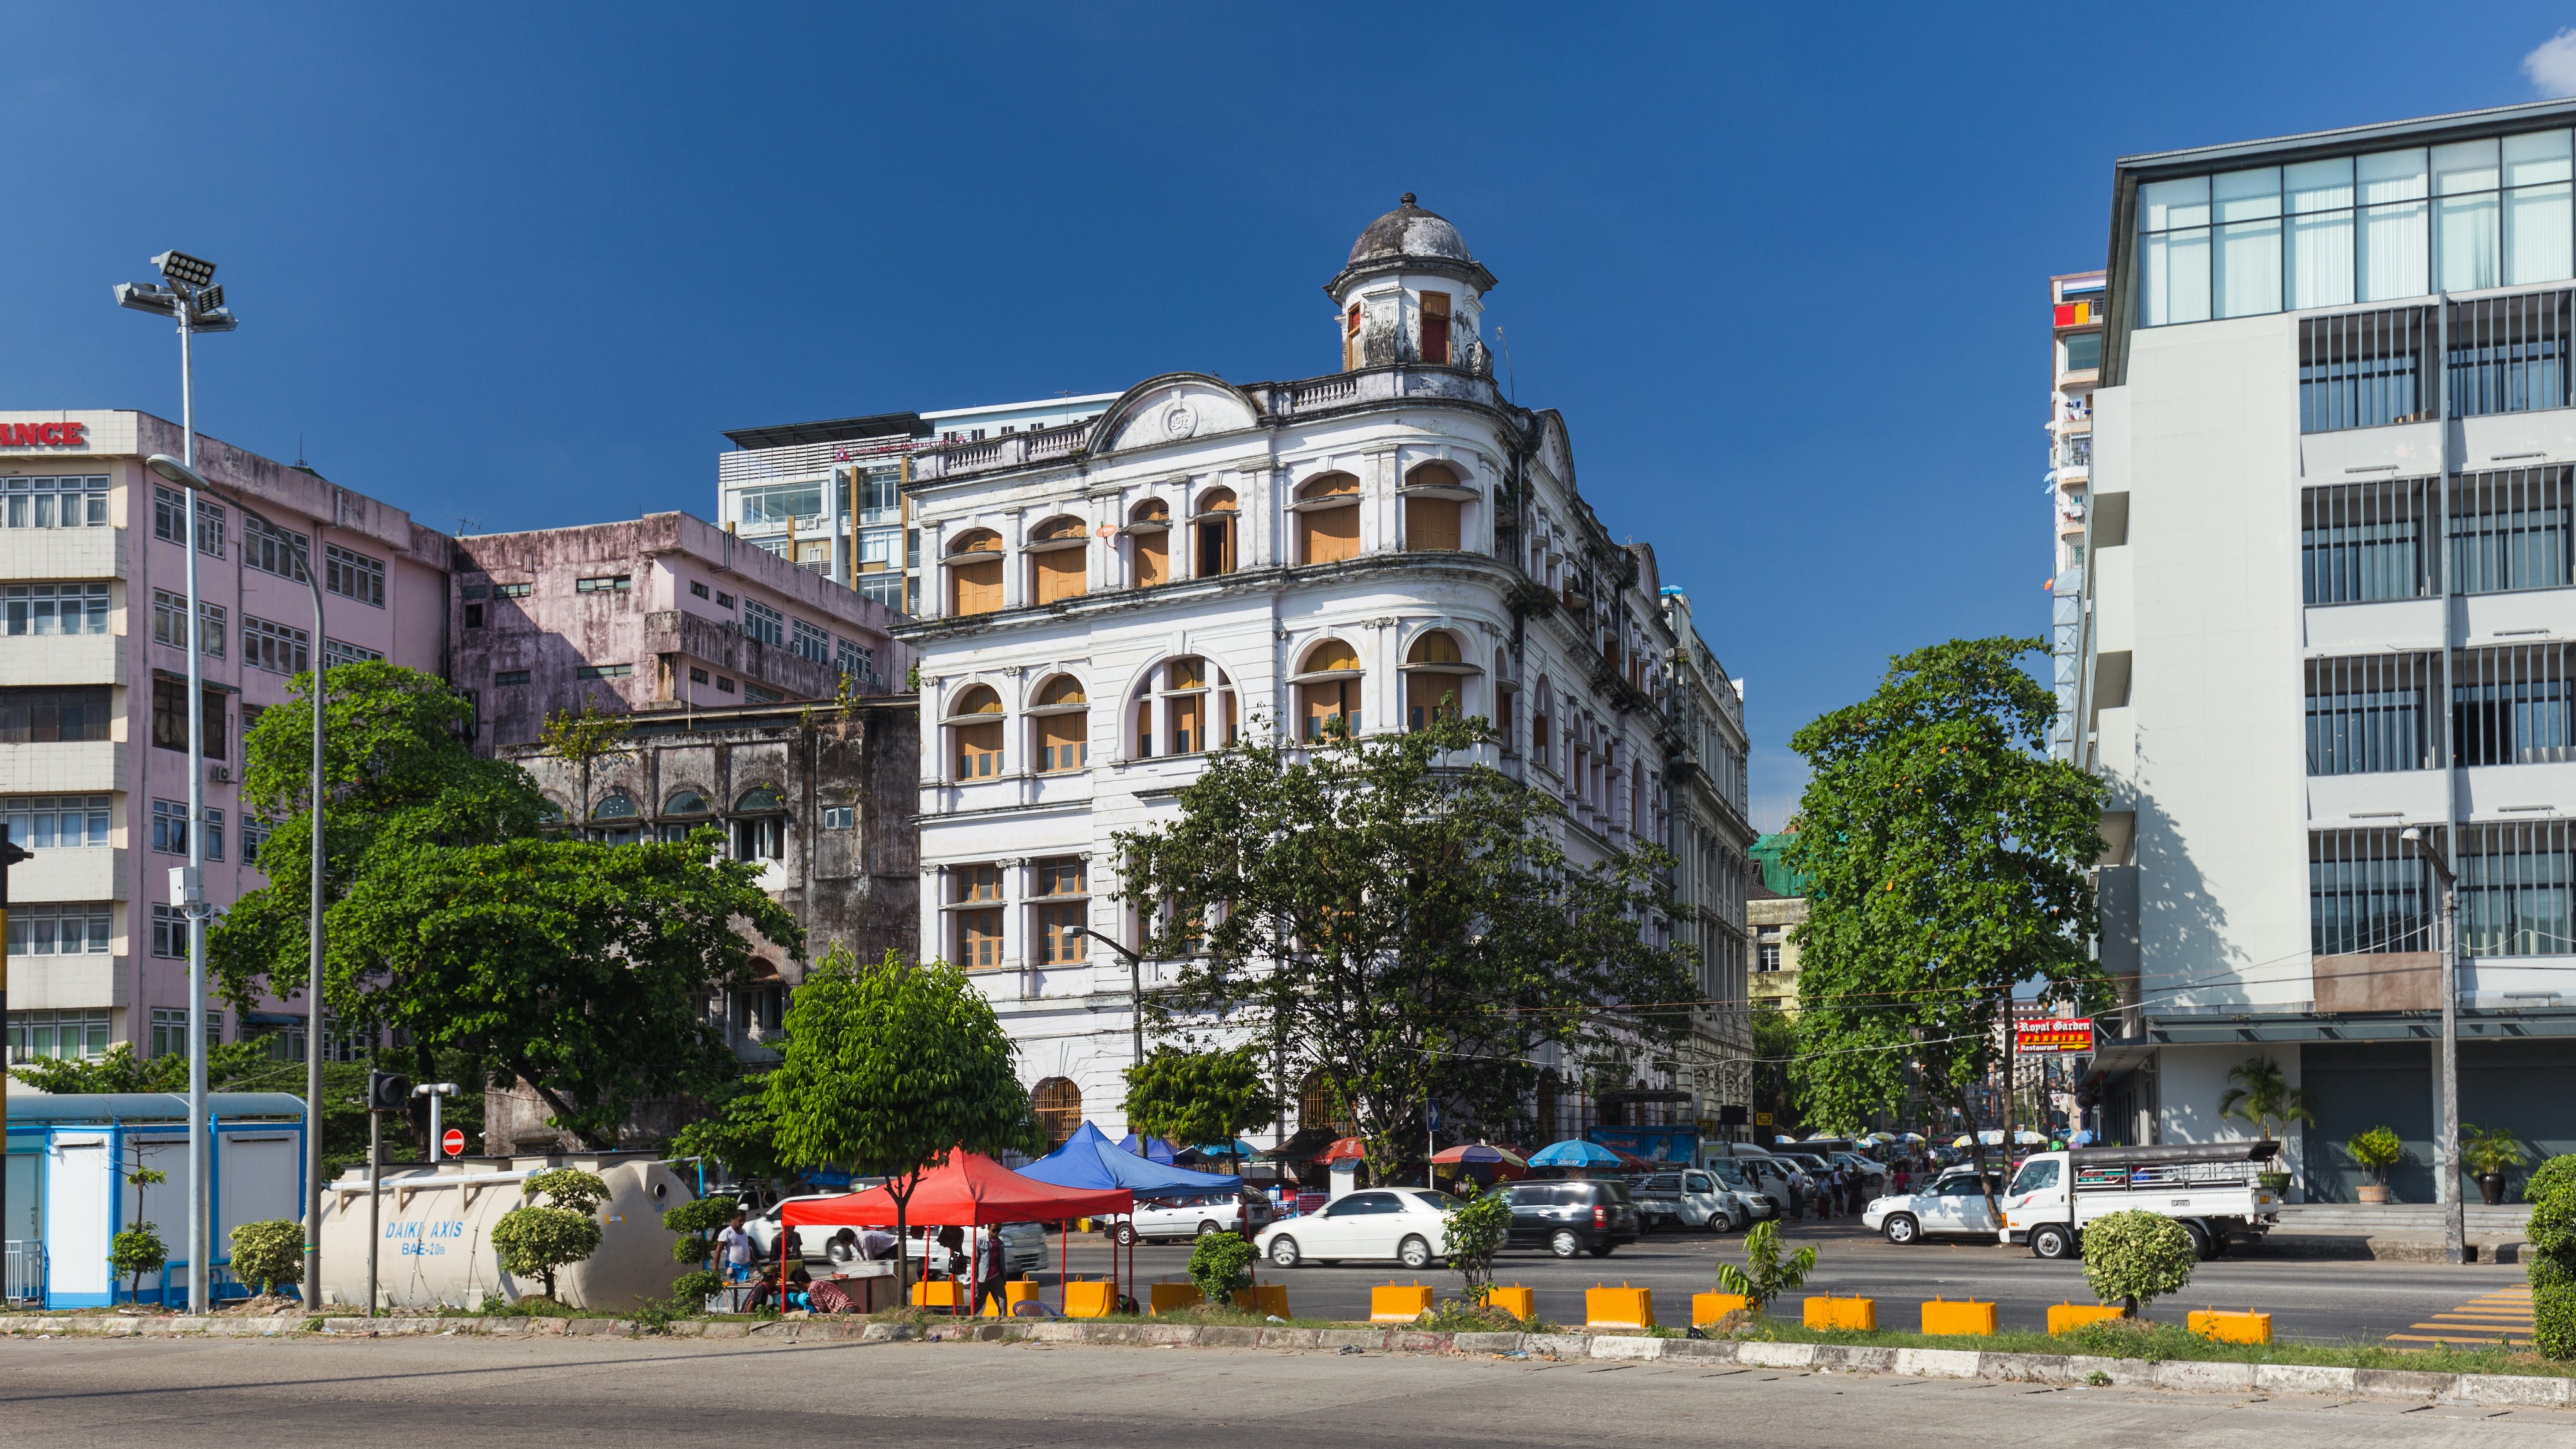 2016 Rangun, Budynki wzdłuż ulicy Strand (03)